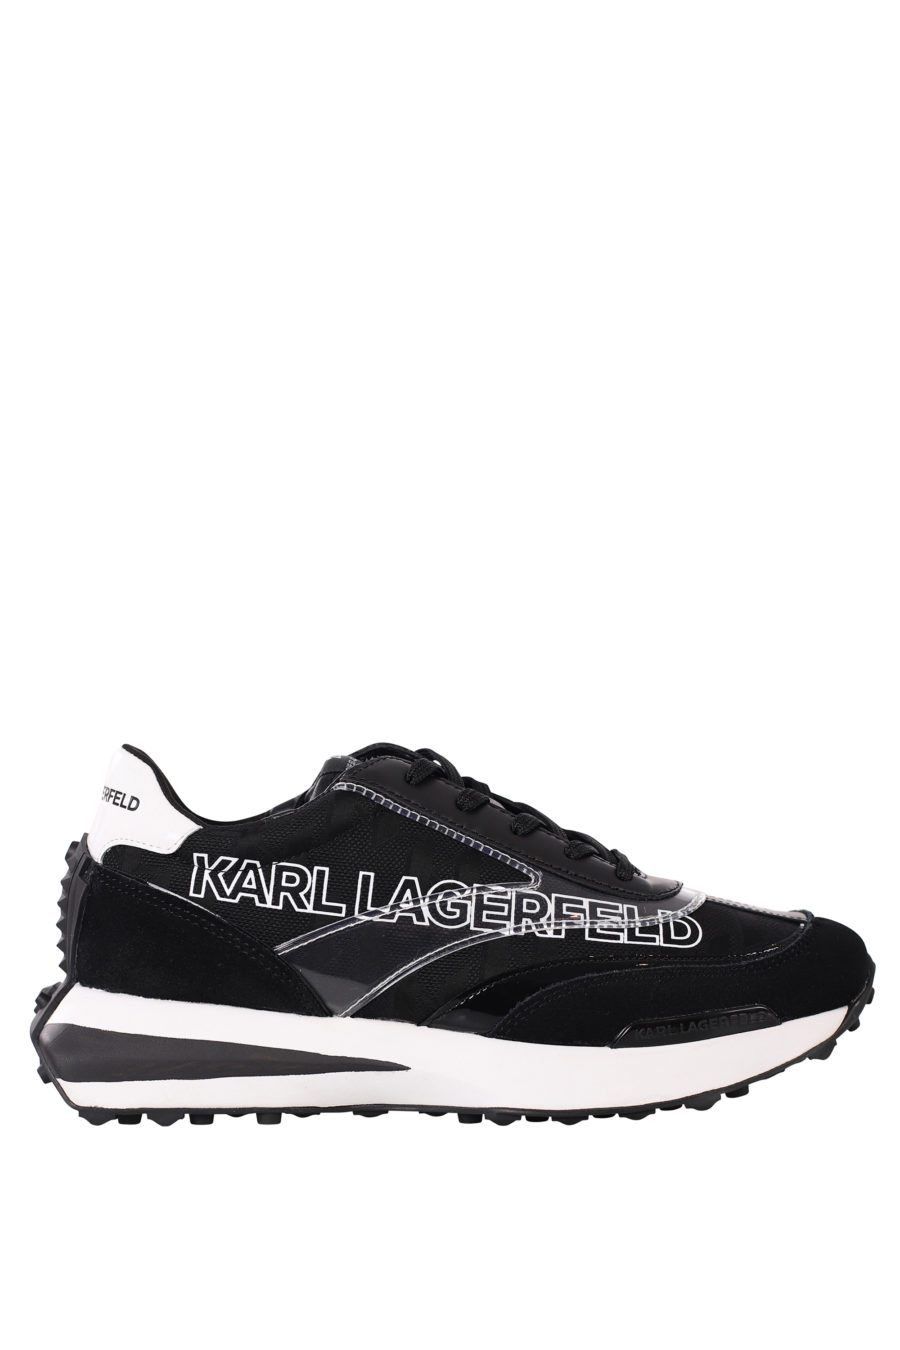 Zapatillas negras "zone" con logo blanco en silueta y suela blanca - IMG 0438